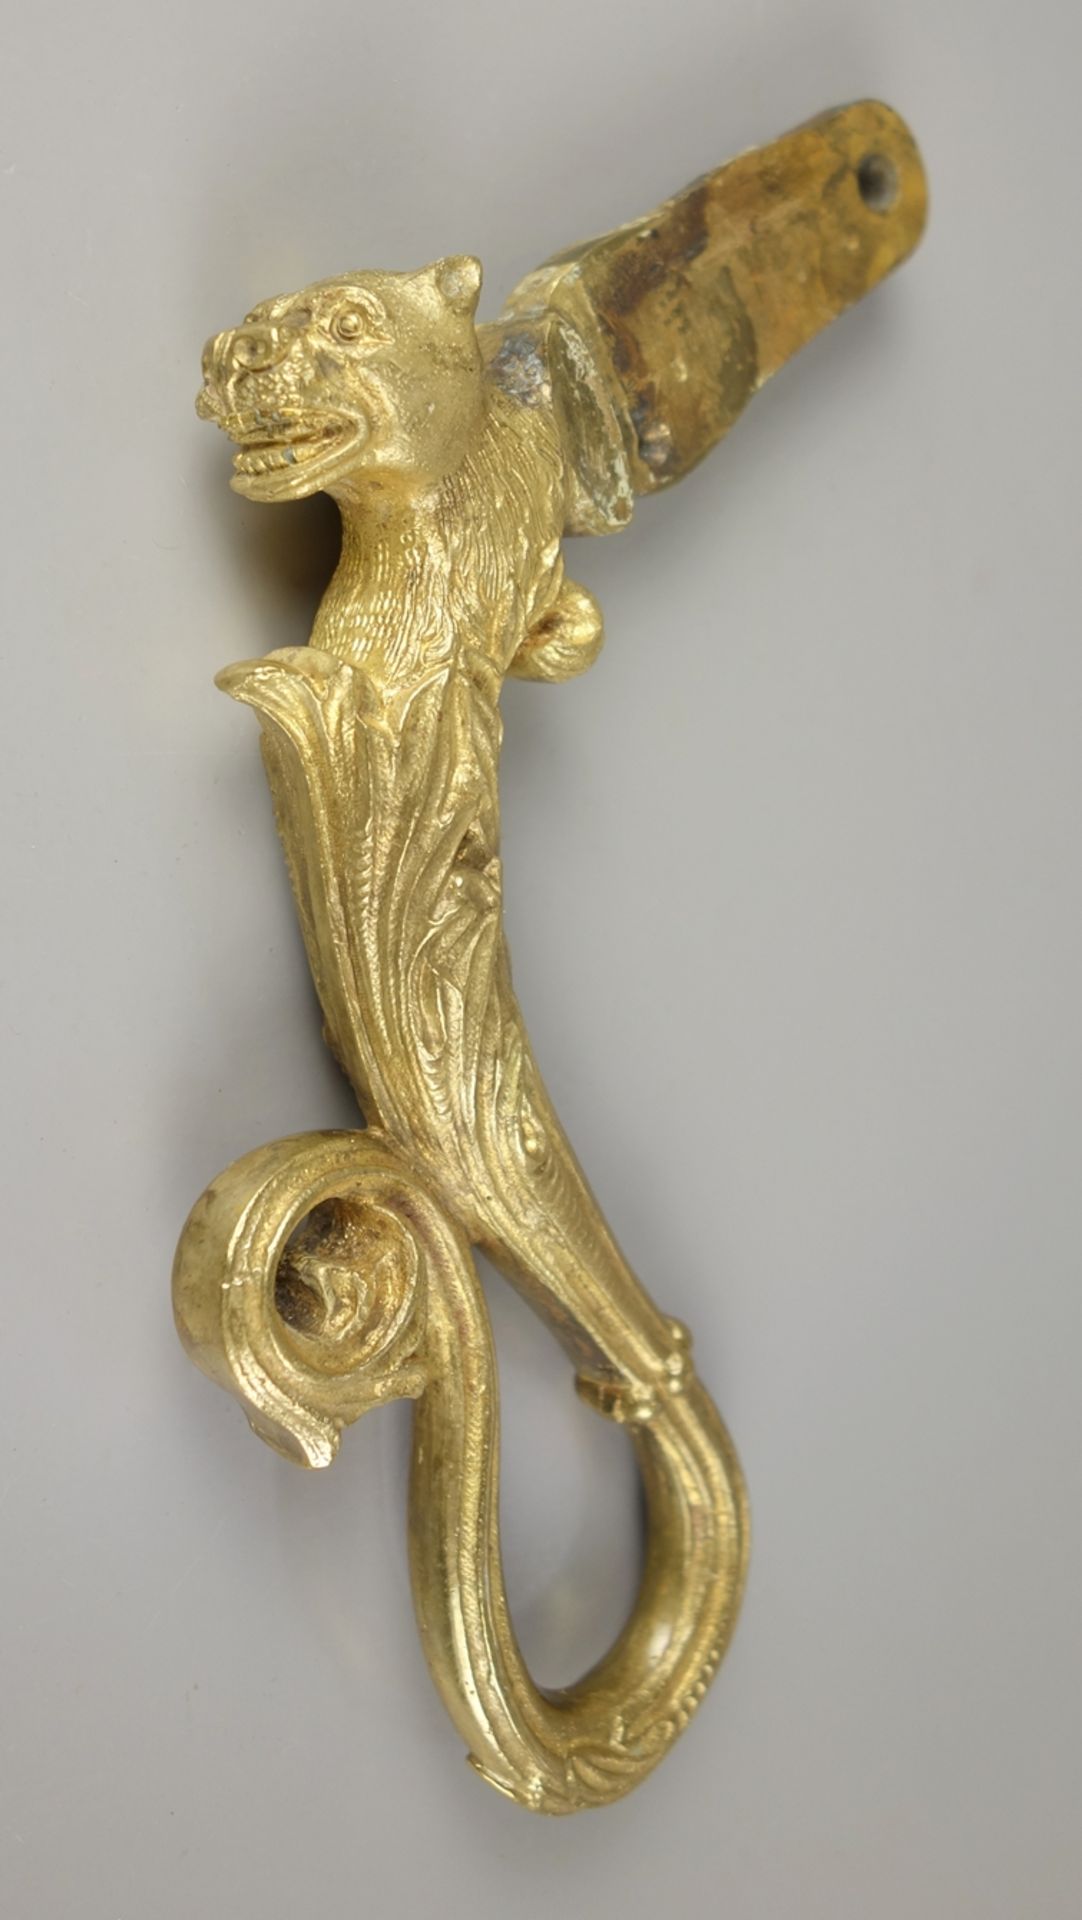 Doorknocker handle, probably 18th century, gilt bronze